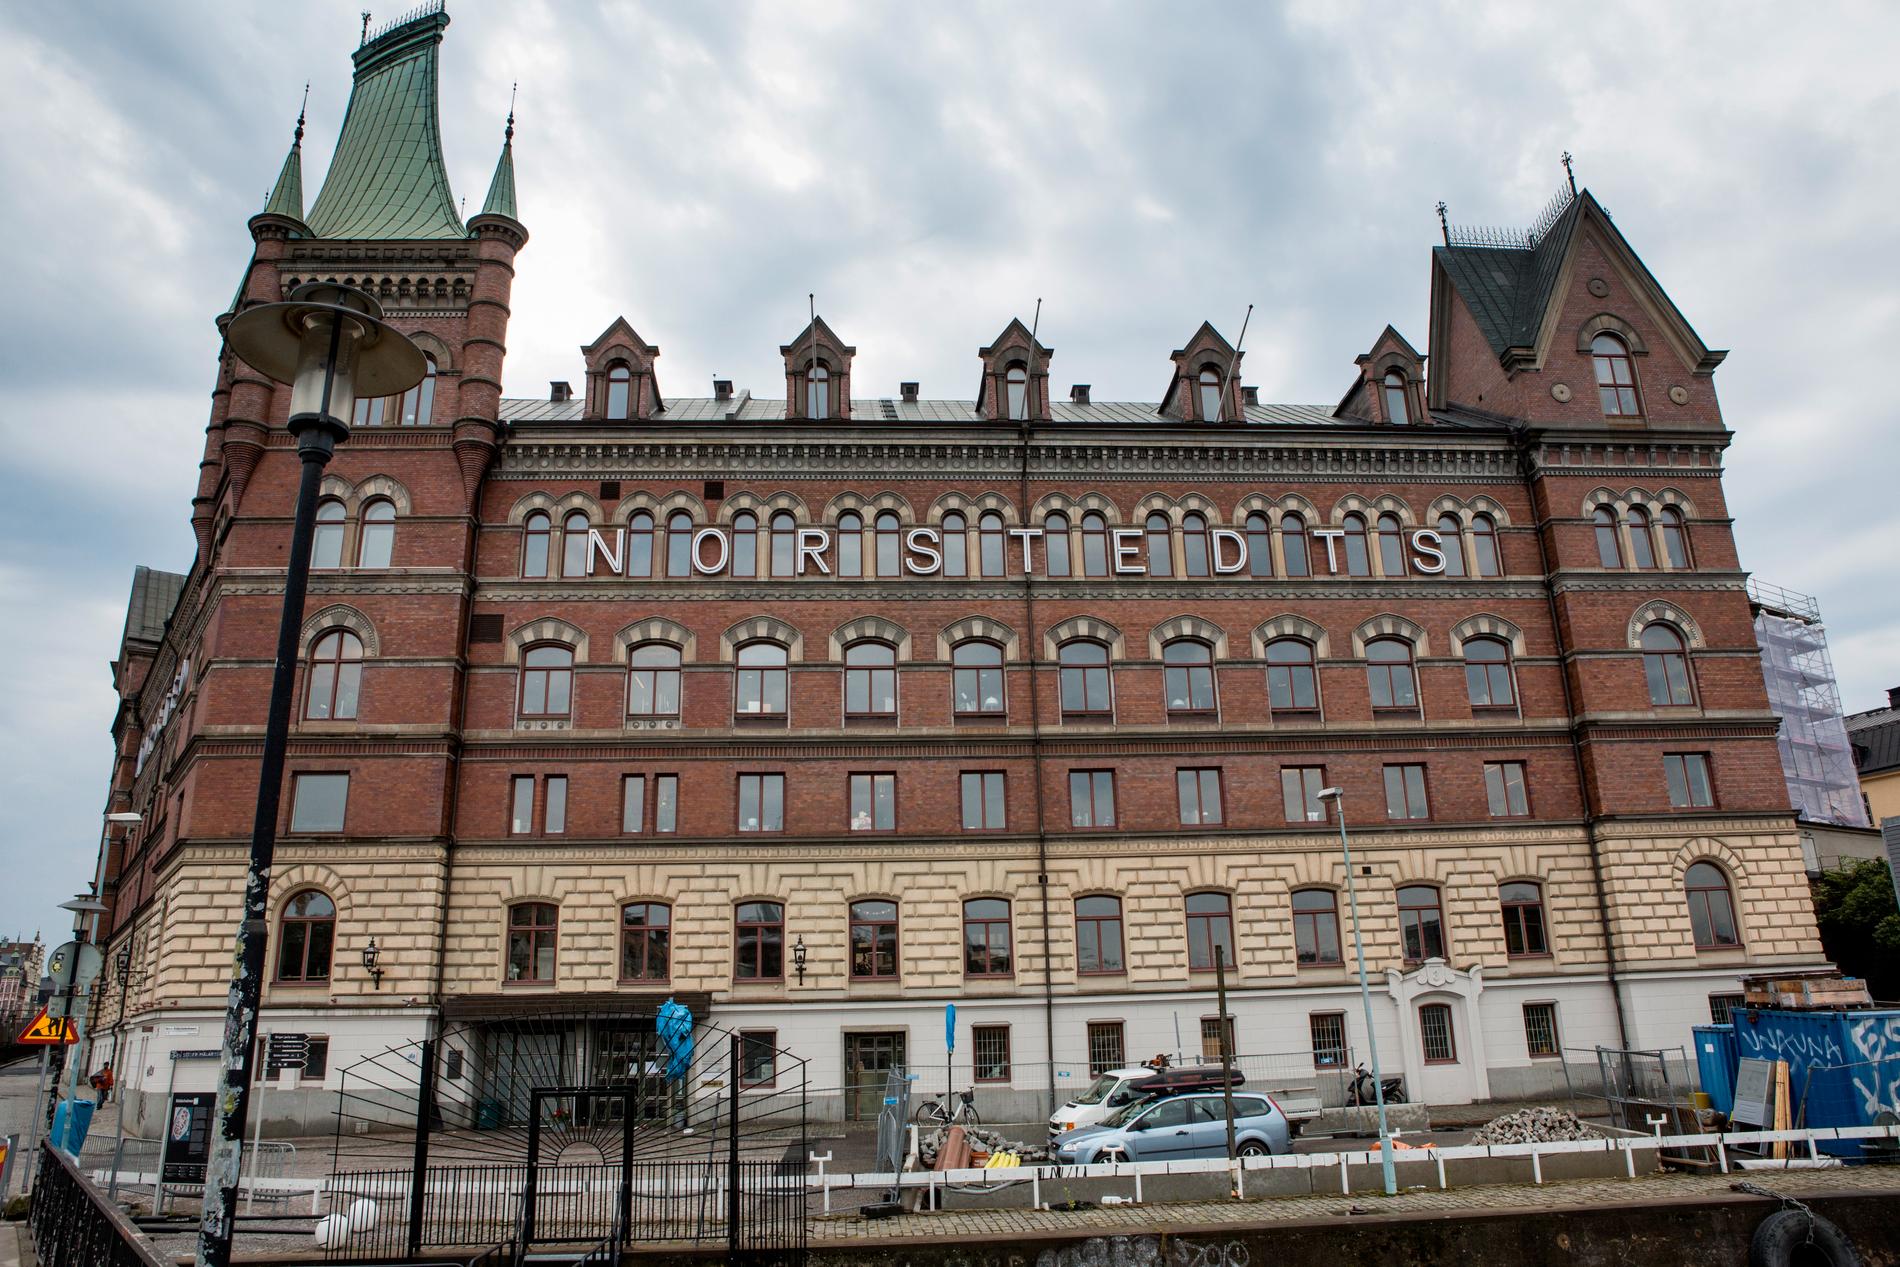 Norstedts förlagsbyggnad på Riddarholmen i Stockholm, där även Storytel har sitt huvudkontor. Arkivbild.